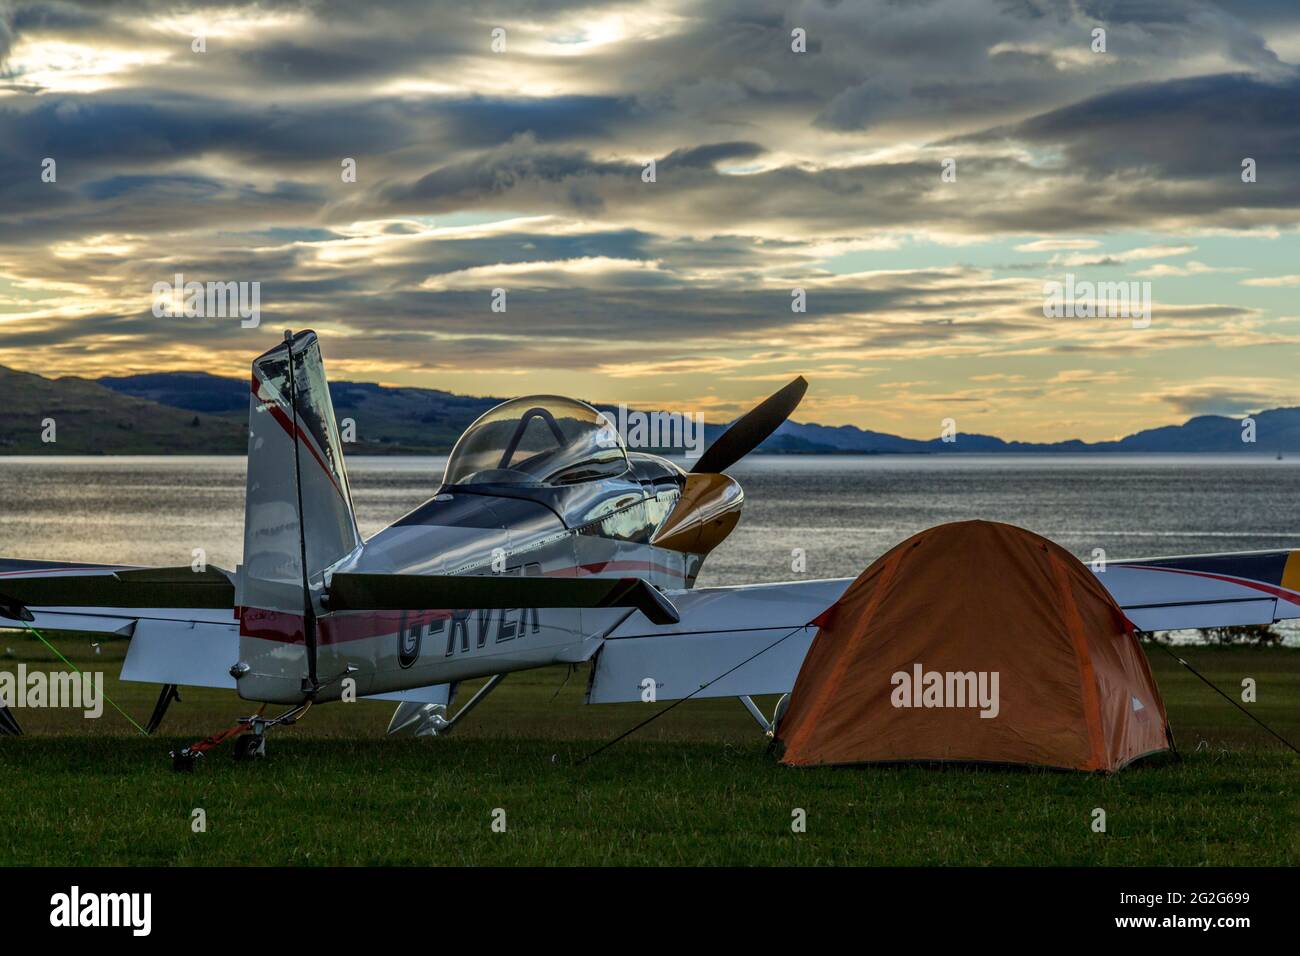 Un avión RV-4 de Van, G-RVER, en el aeródromo de Glenforsa, Isla de Mull, Escocia. El piloto ha lanzado una tienda de campaña al lado del avión. Foto de stock